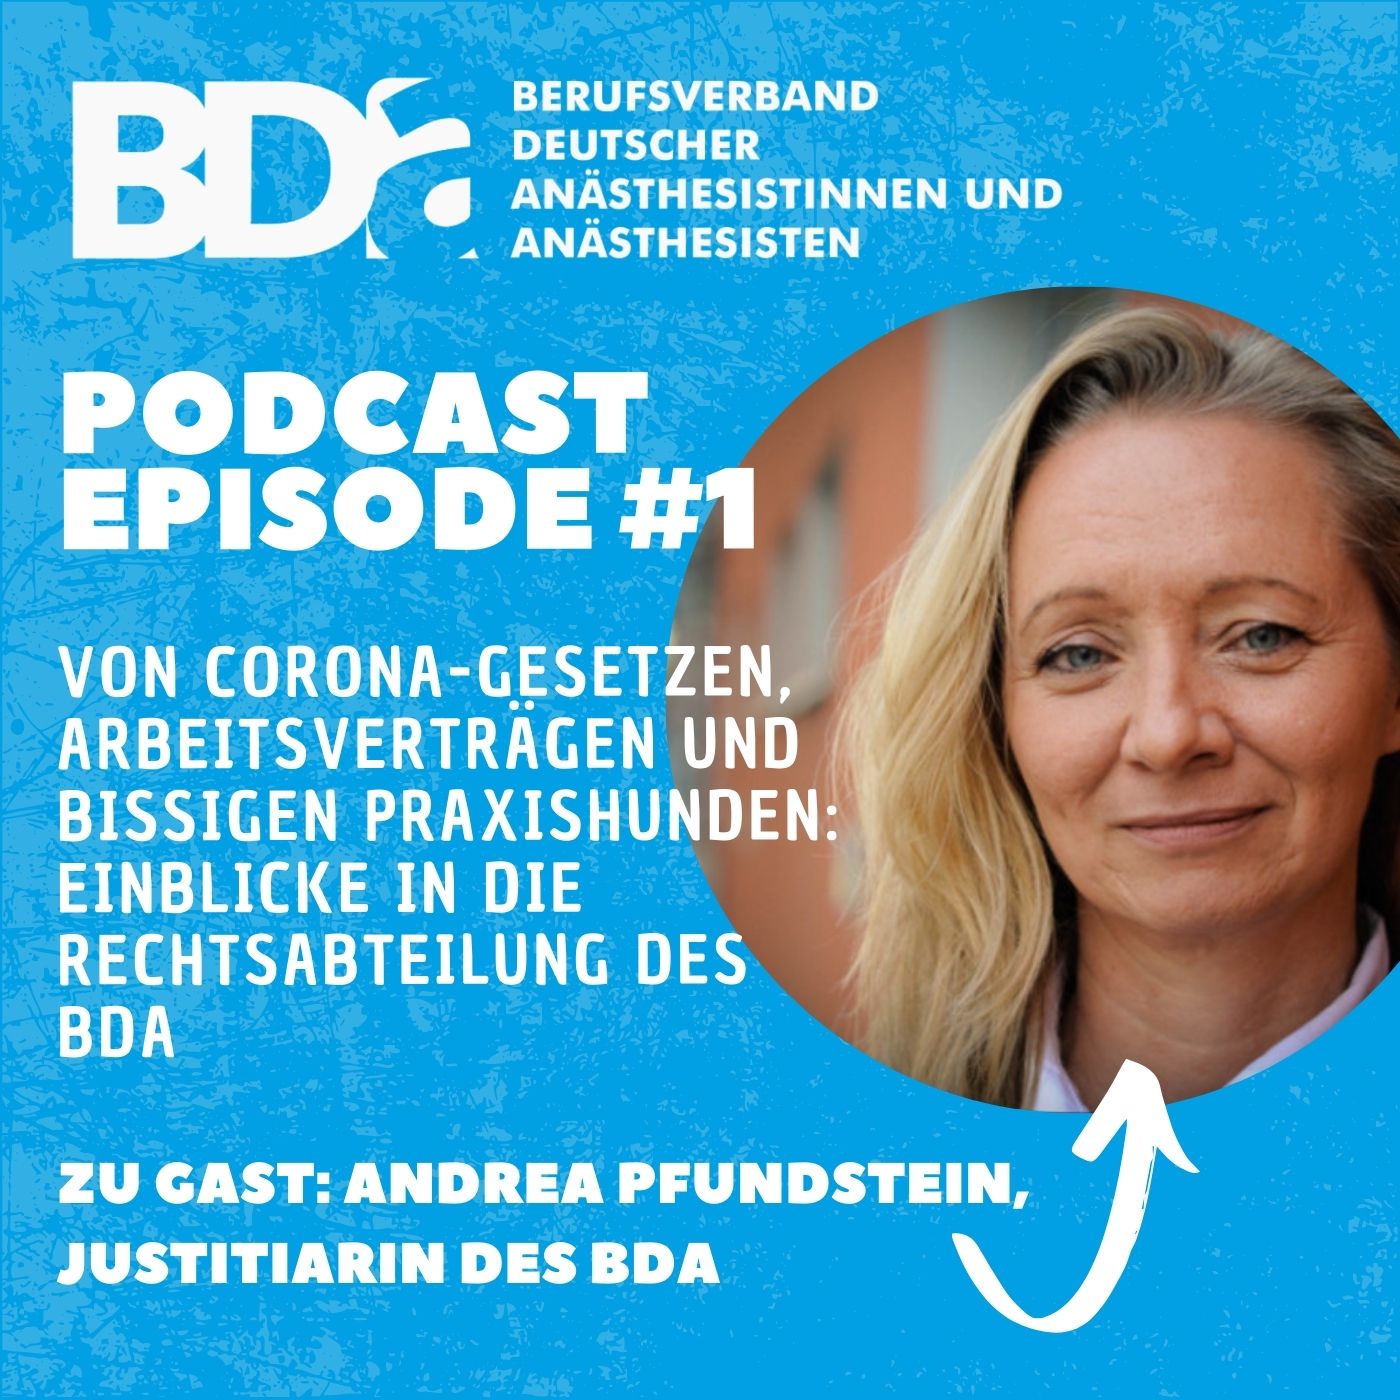 BDA-Podcast Episode #1: Die Rechtsabteilung des BDA - mit Justitiarin Andrea Pfundstein